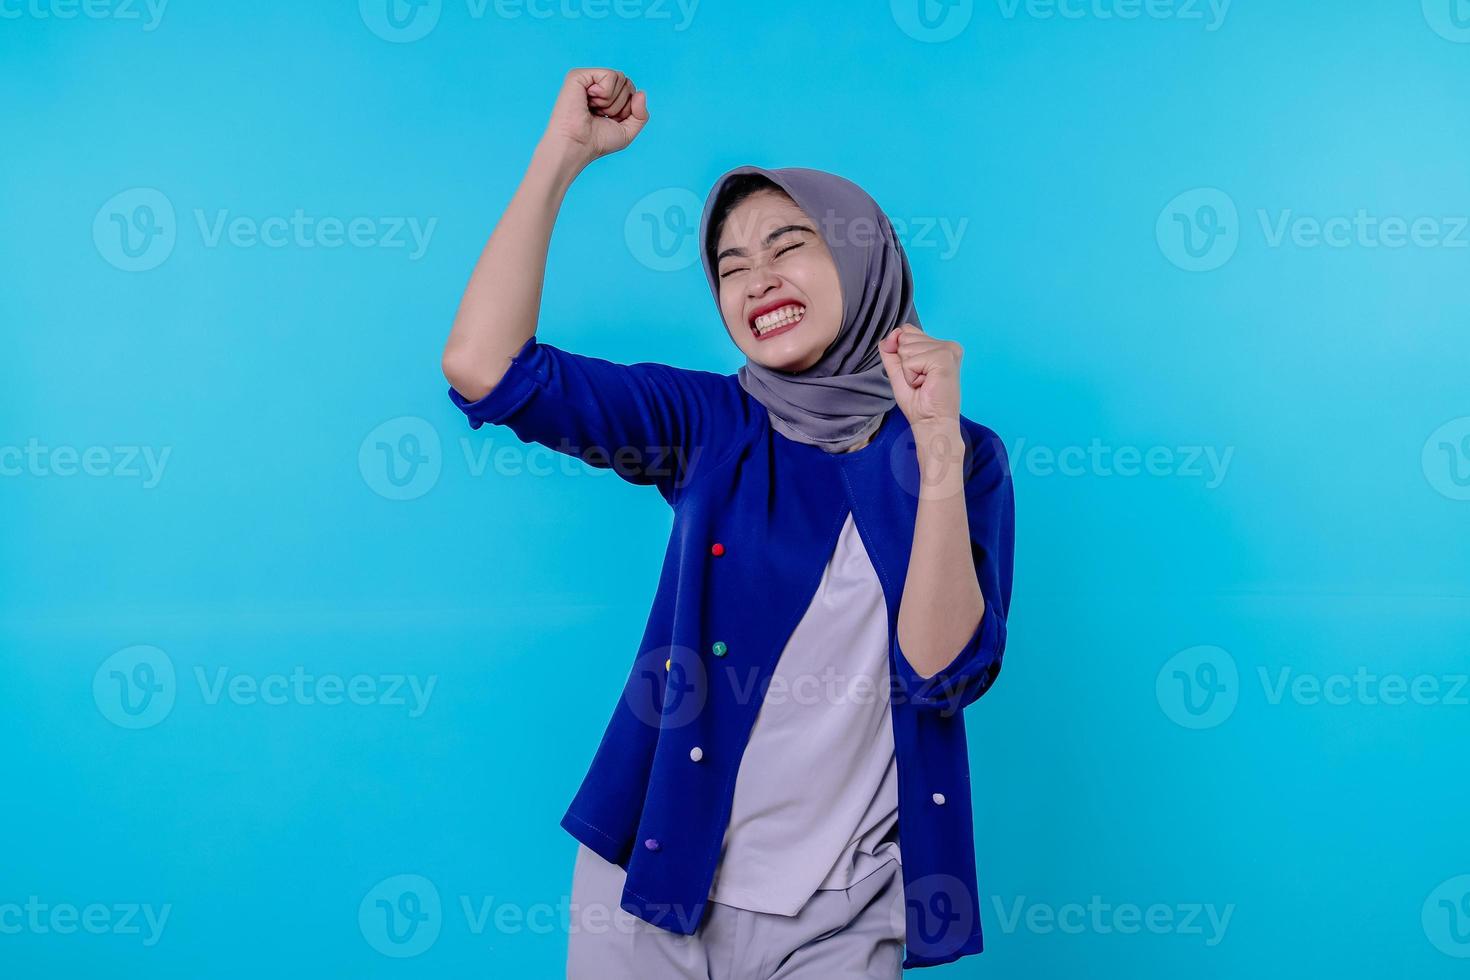 vrolijke jonge vrouw heeft een positieve uitdrukking, balt vuisten, heeft een dolgelukkige blik, is opgewekt, draagt hijab, geïsoleerd over blauwe muur foto